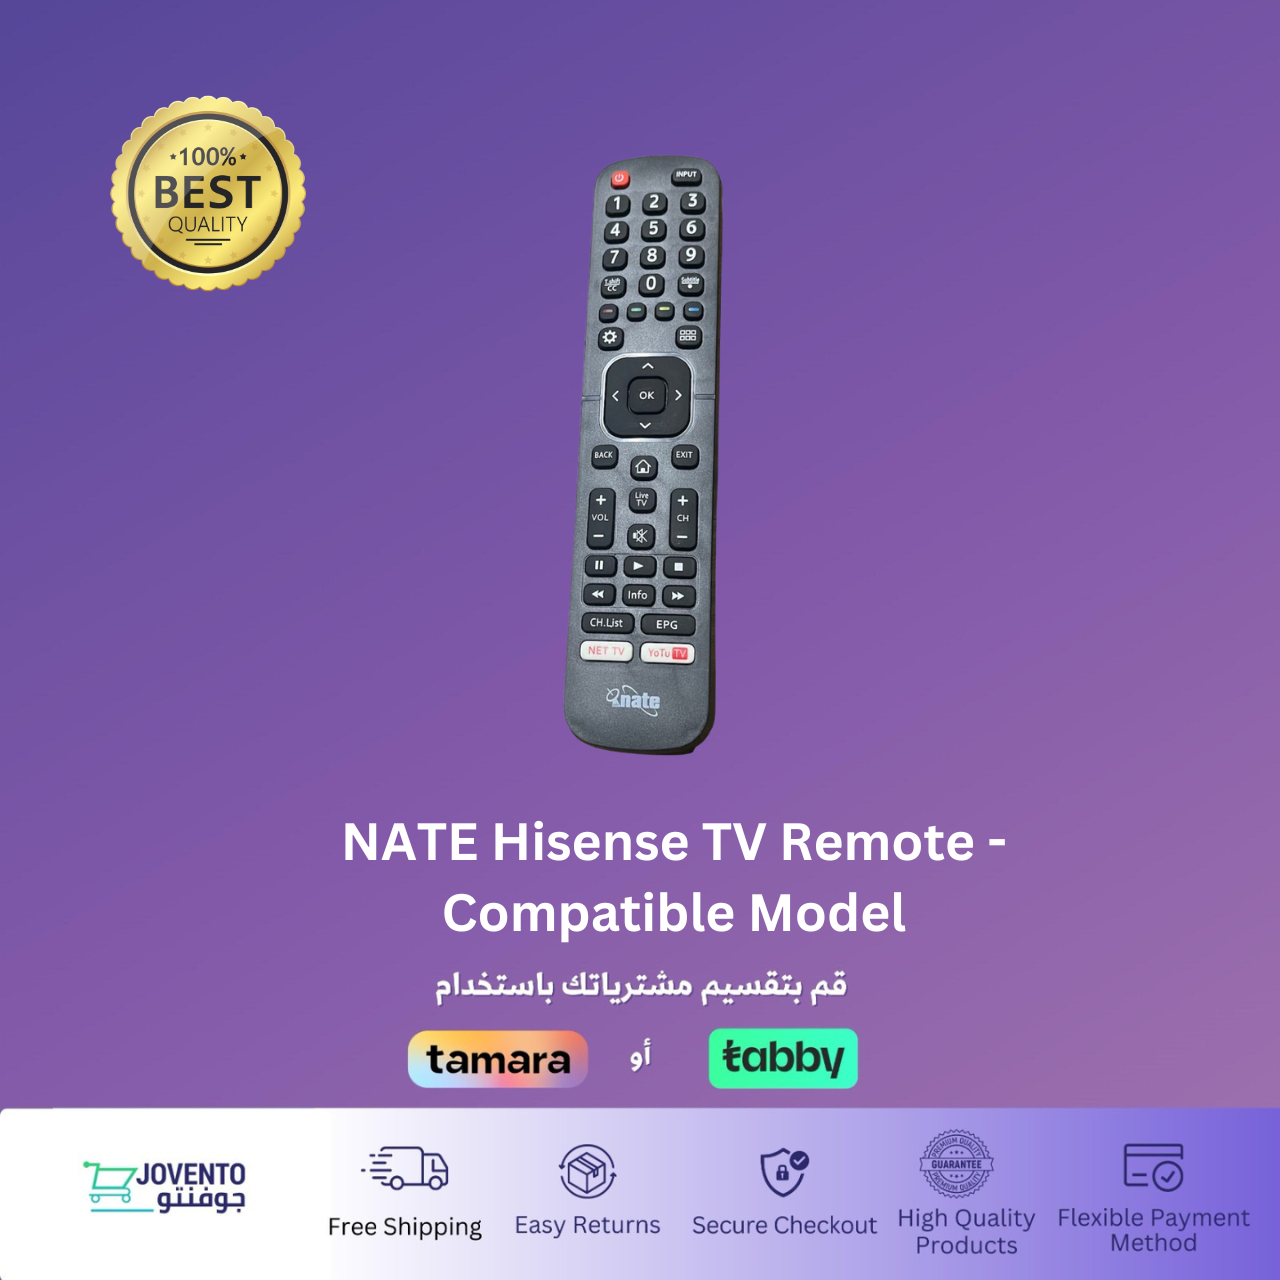 NATE Hisense TV Remote - Compatible Model